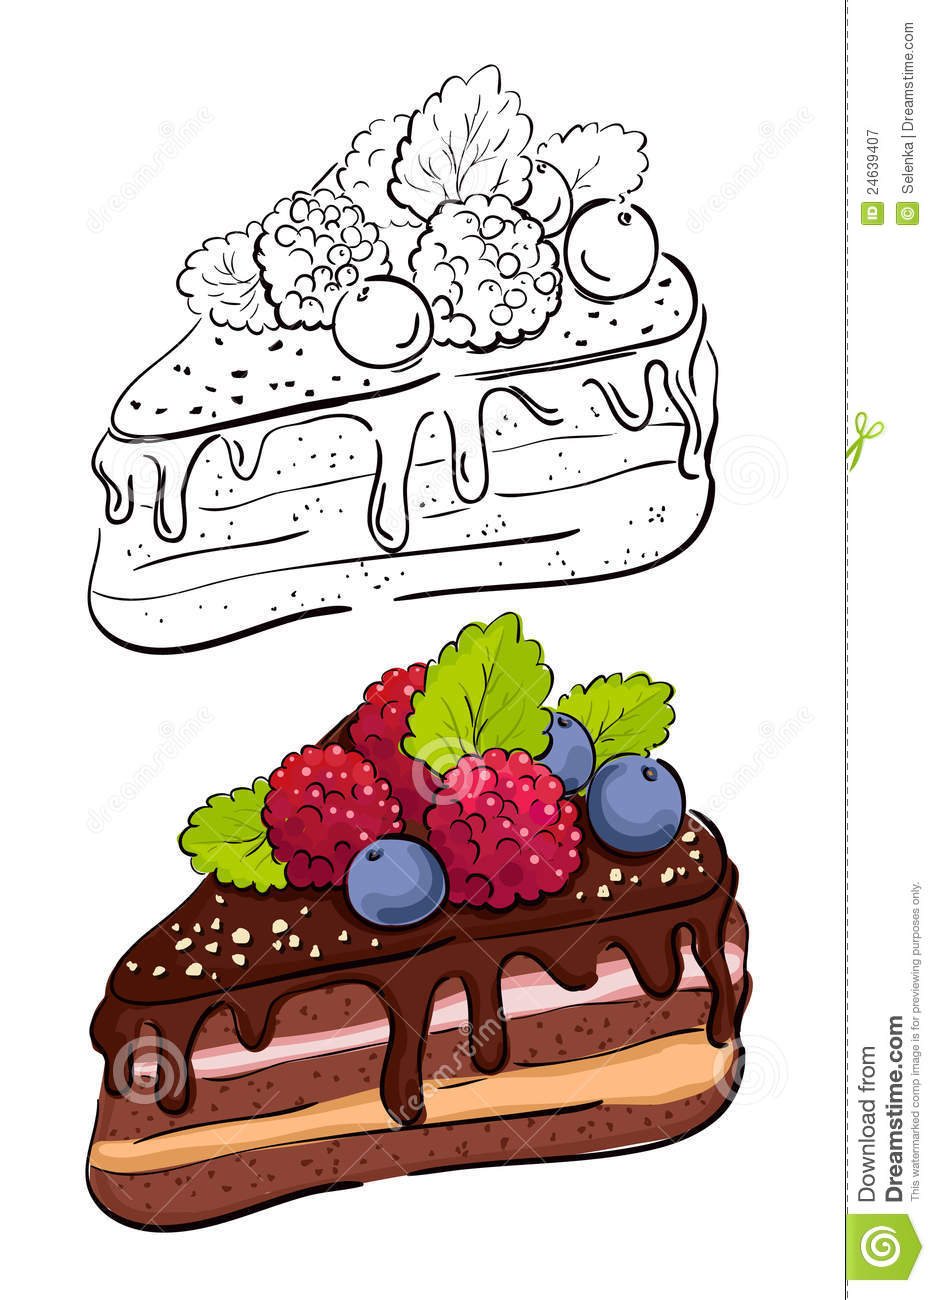 Cartoon Slice Of Cake. Stock Vector. Illustration Of concernant Dessin De Gateau D Anniversaire En Couleur